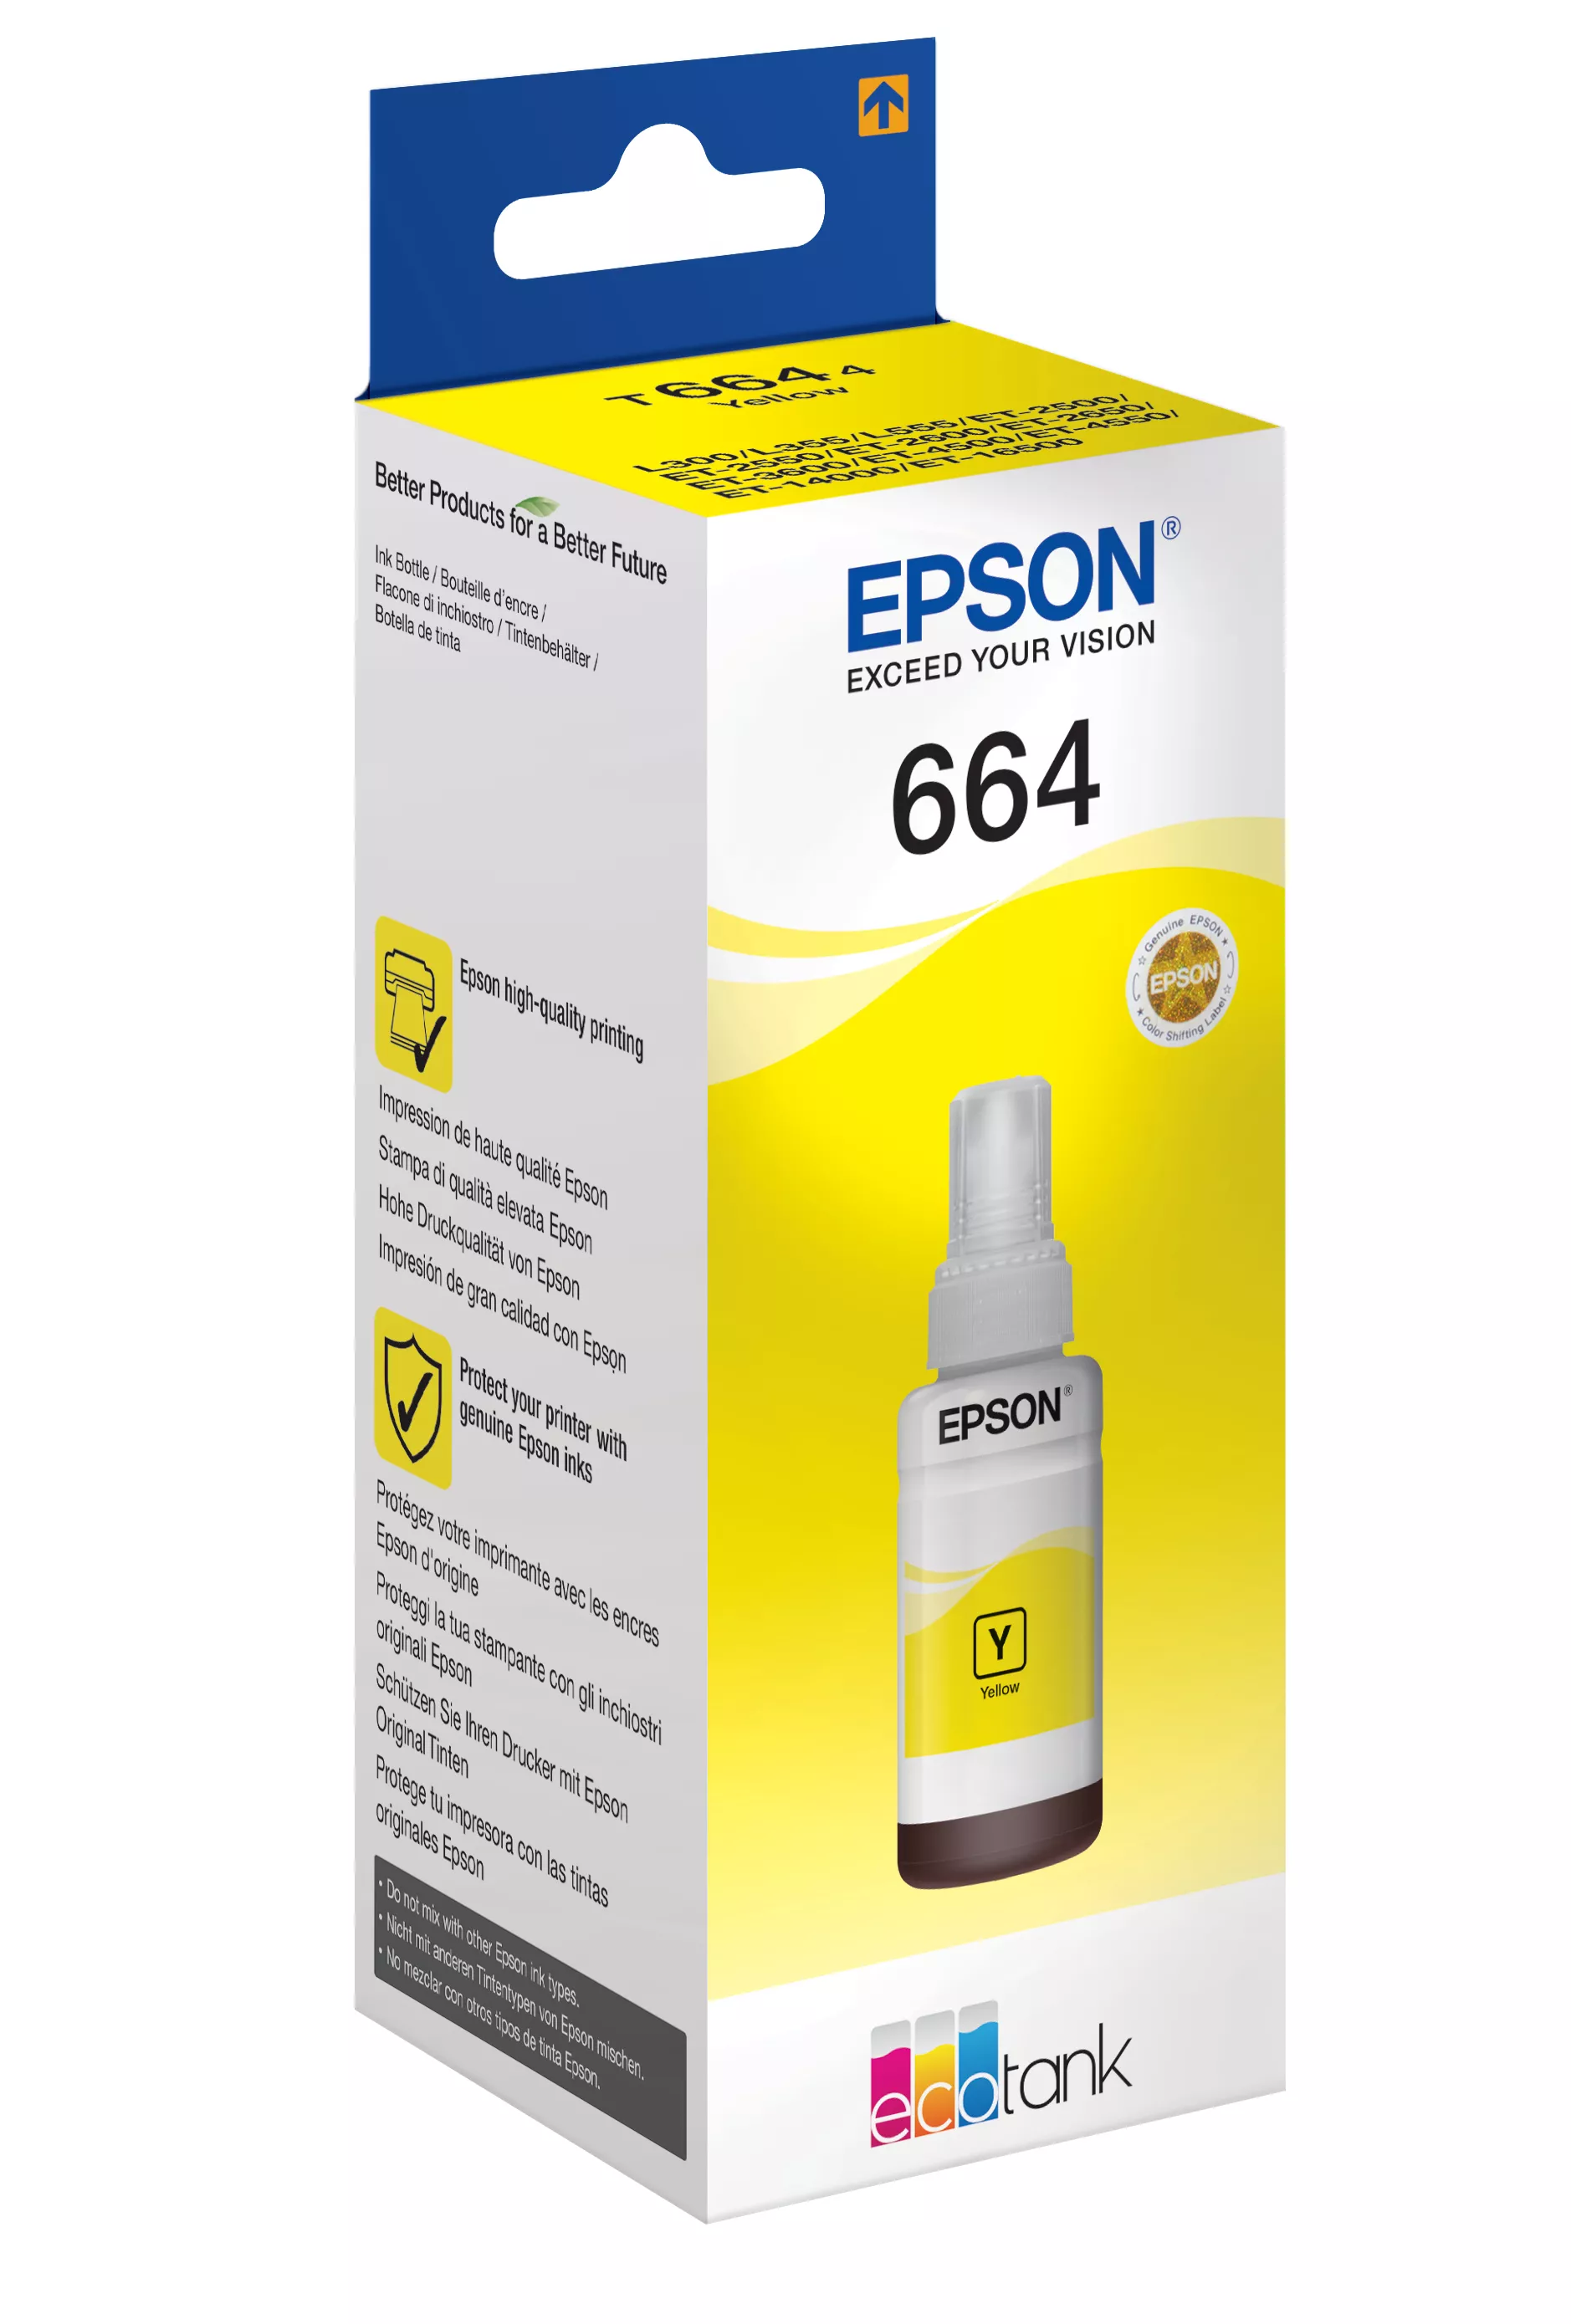 Vente EPSON T6644 cartouche d encre jaune 70ml pack Epson au meilleur prix - visuel 2